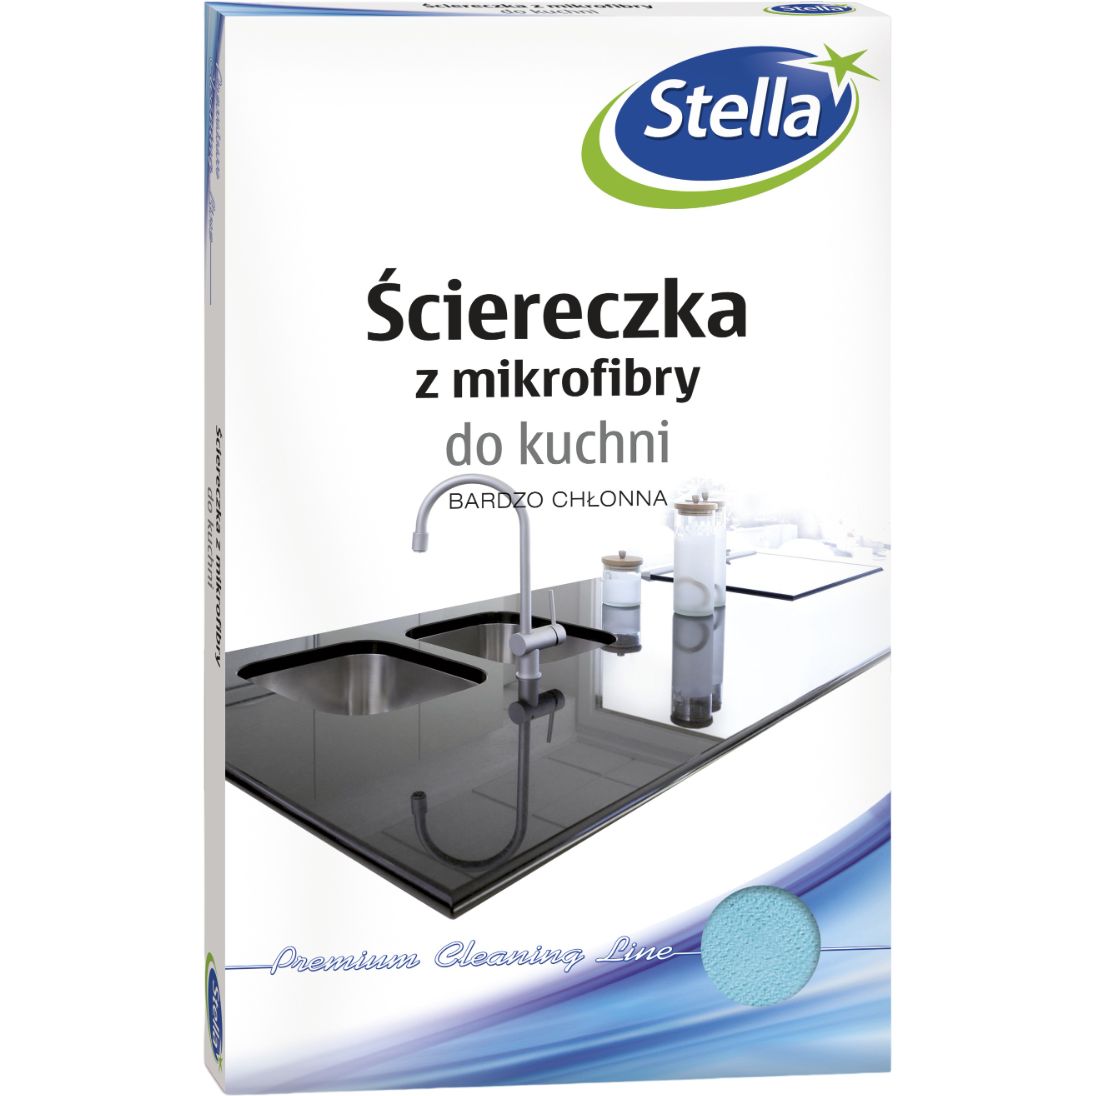 Салфетка Stella микрофибра для кухни - фото 1